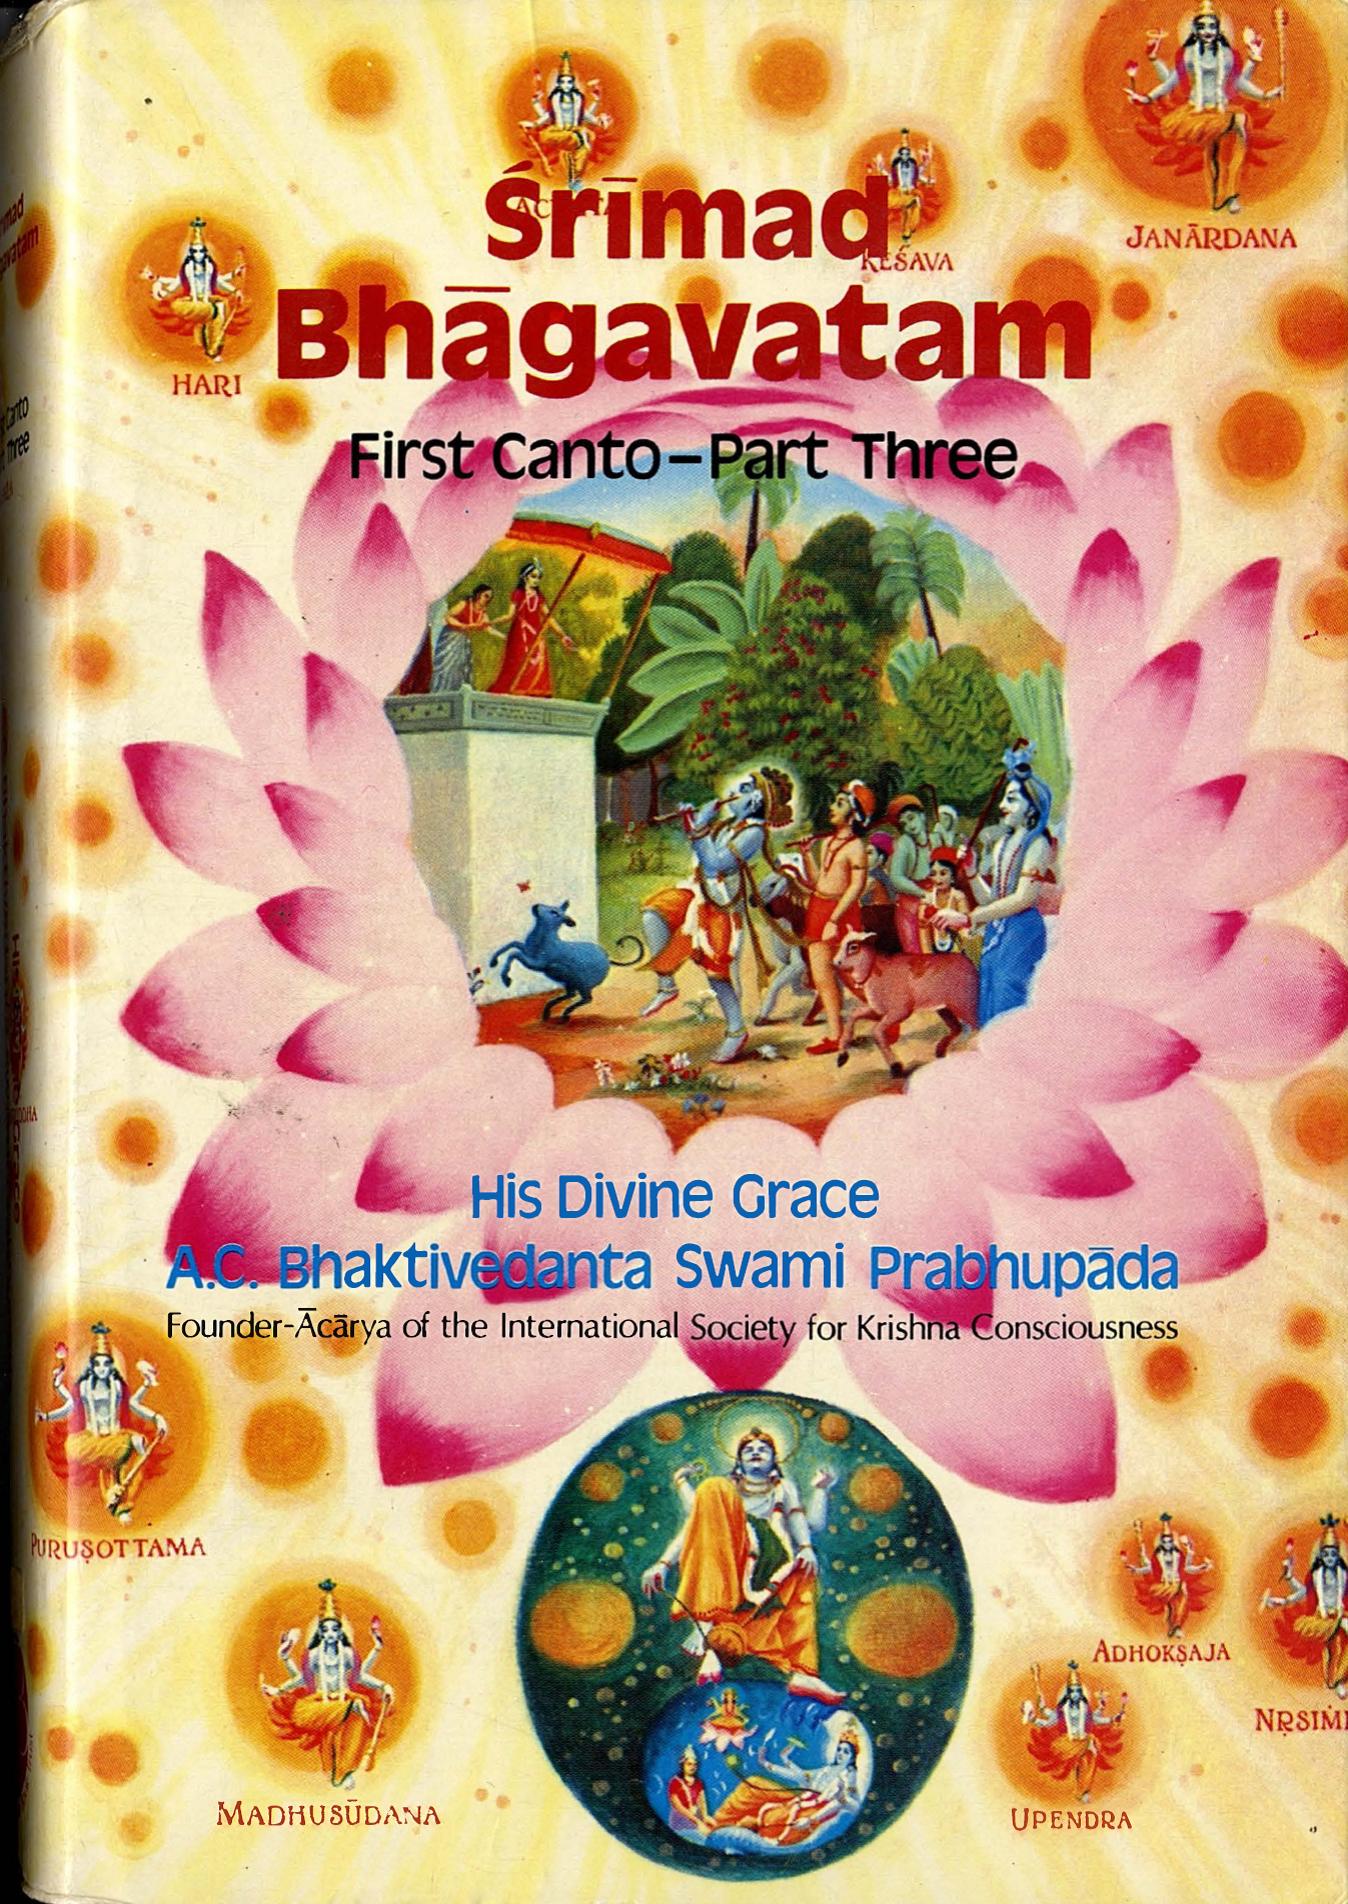 Srimad Bhagavatam In Hindi Pdf Free 71